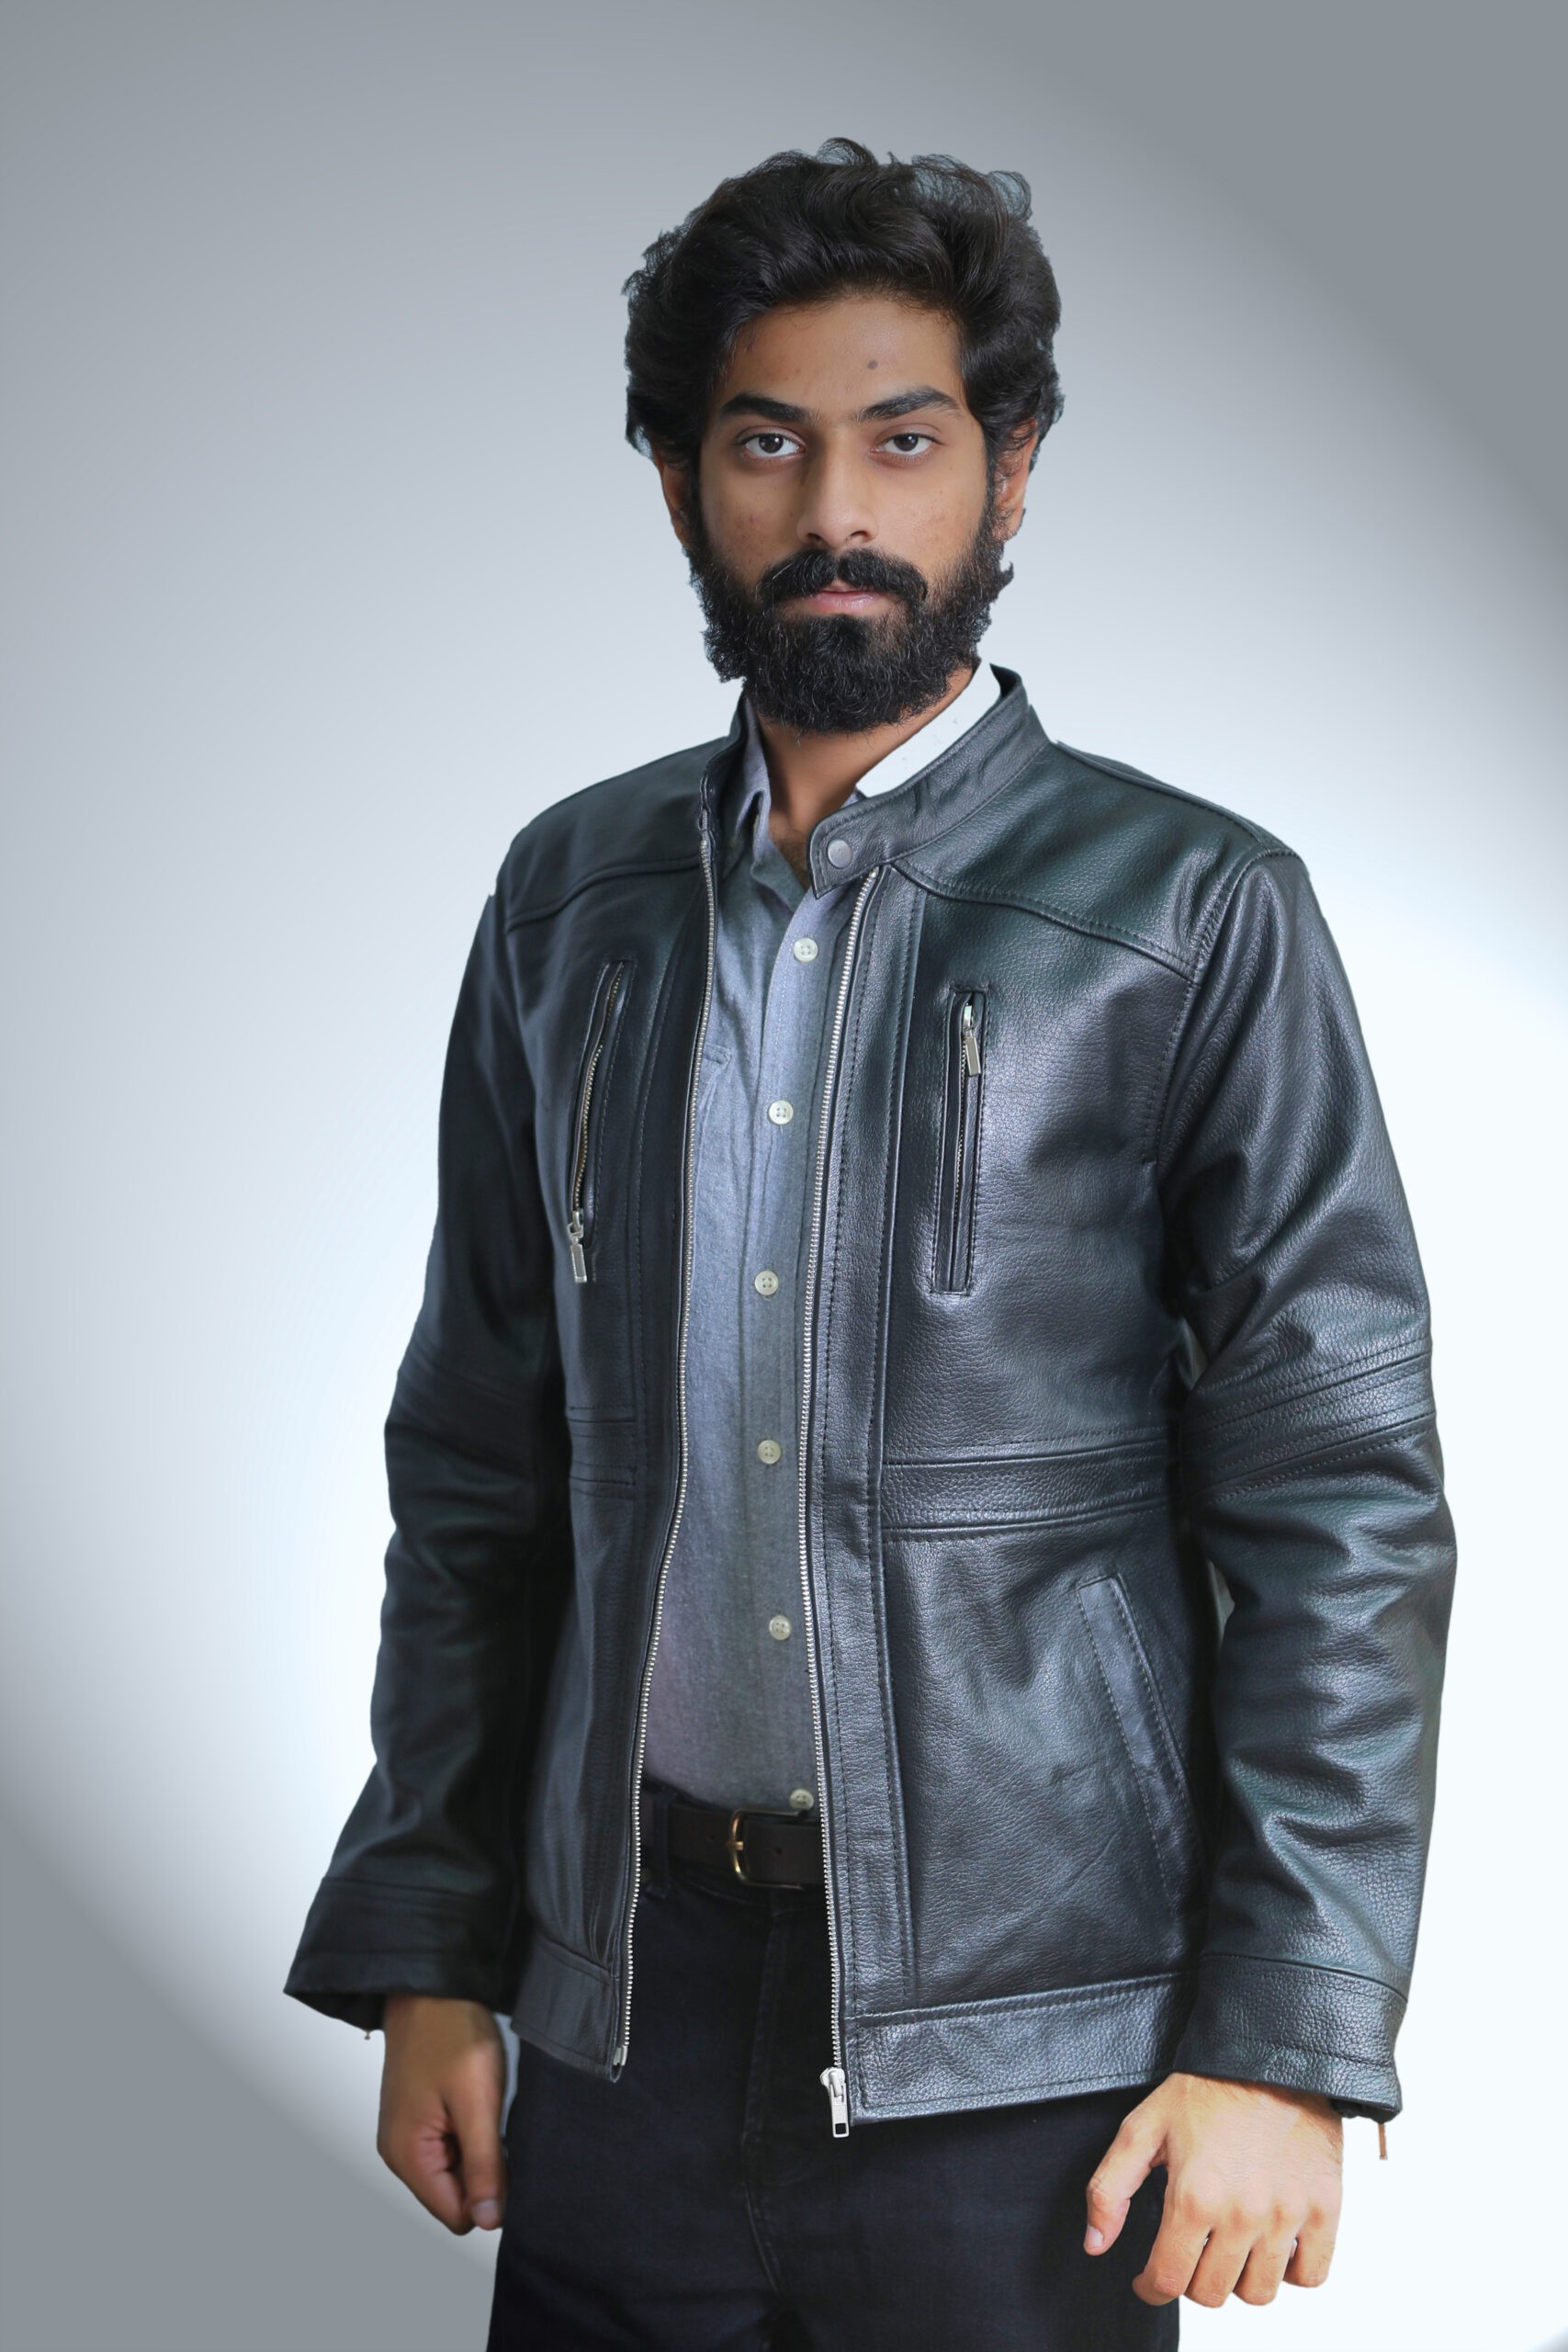 VZ Black Leather Jacket for men – Mender Leather Factory